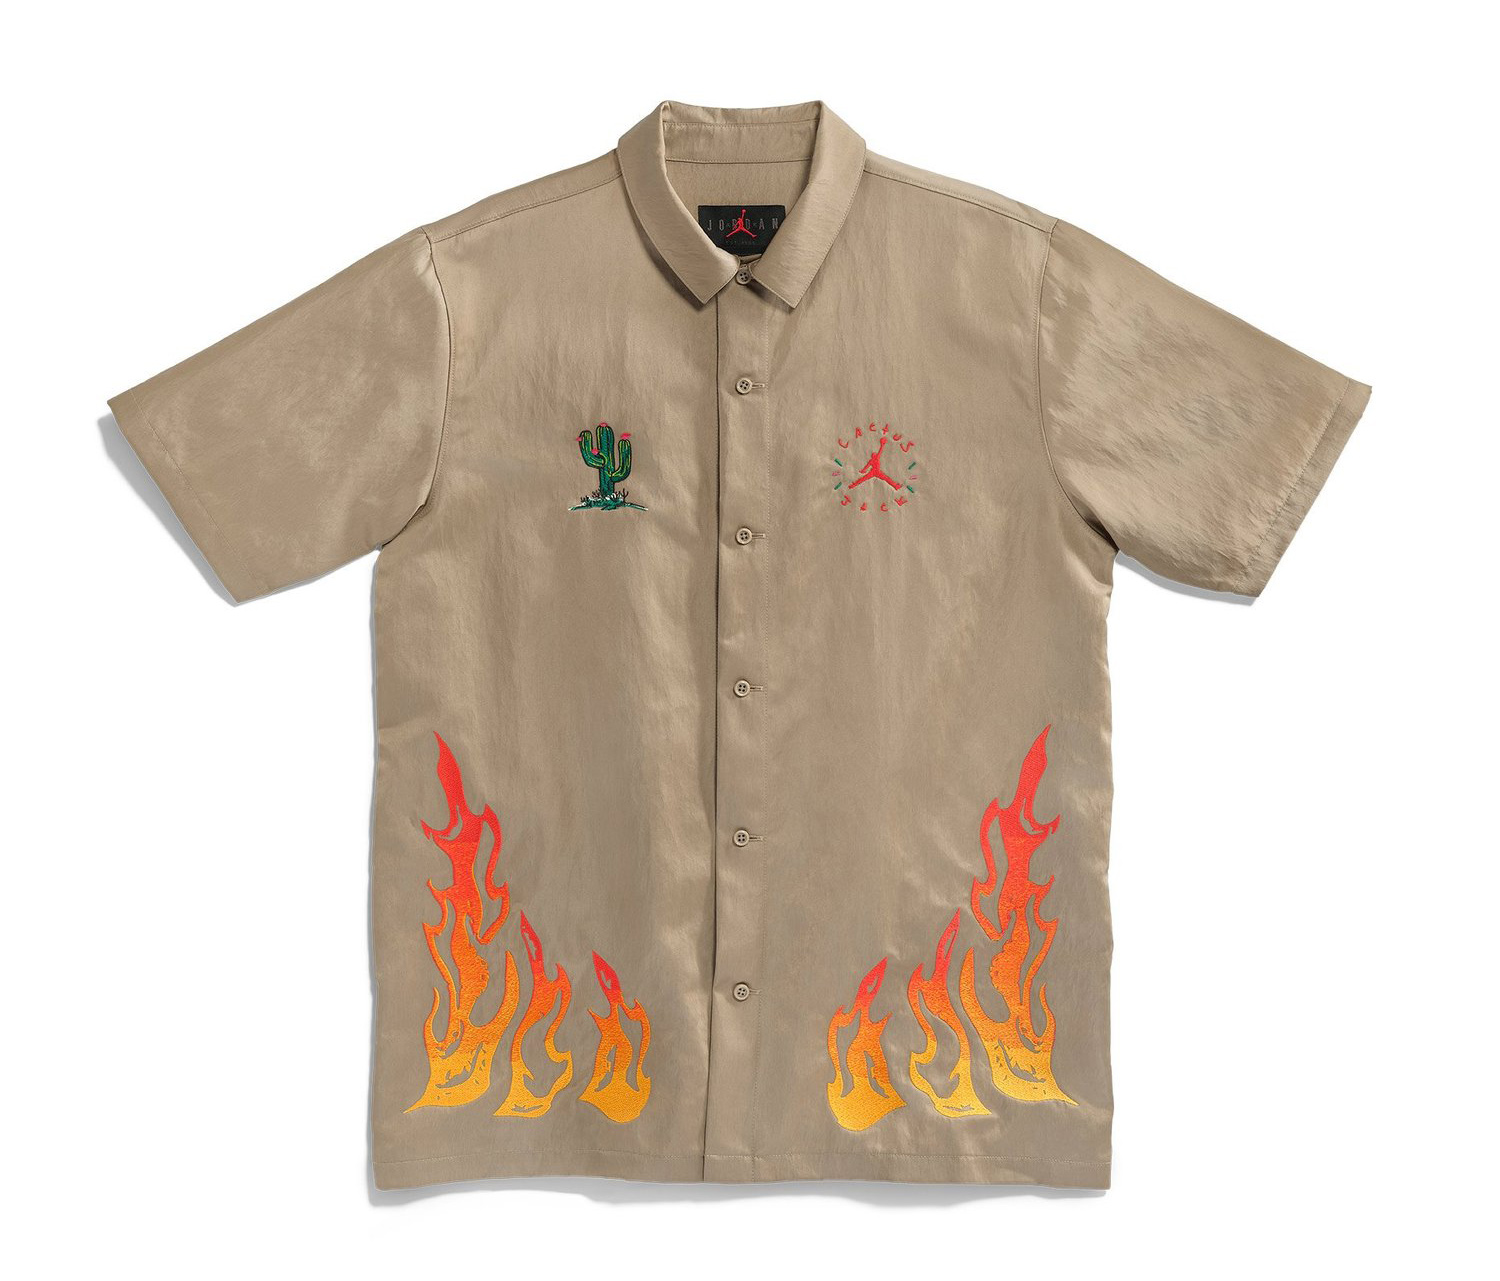 travis-scott-air-jordan-6-british-khaki-button-down-shirt-1